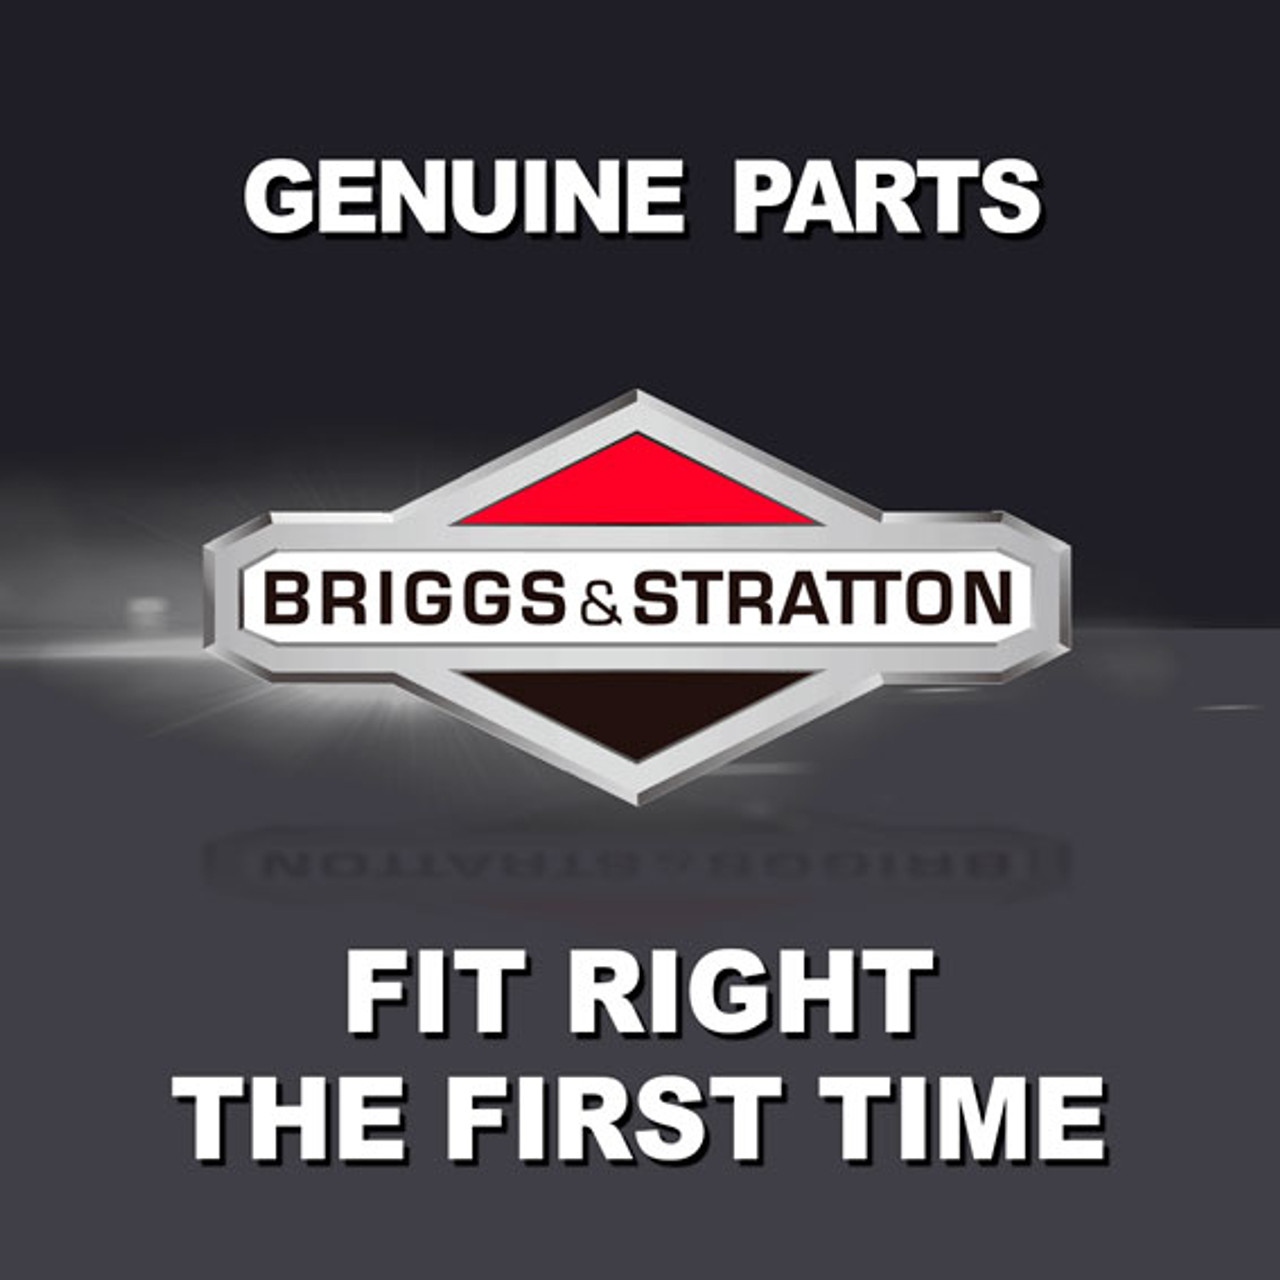 BRIGGS & STRATTON WIREFORM 21221GS - Image 1